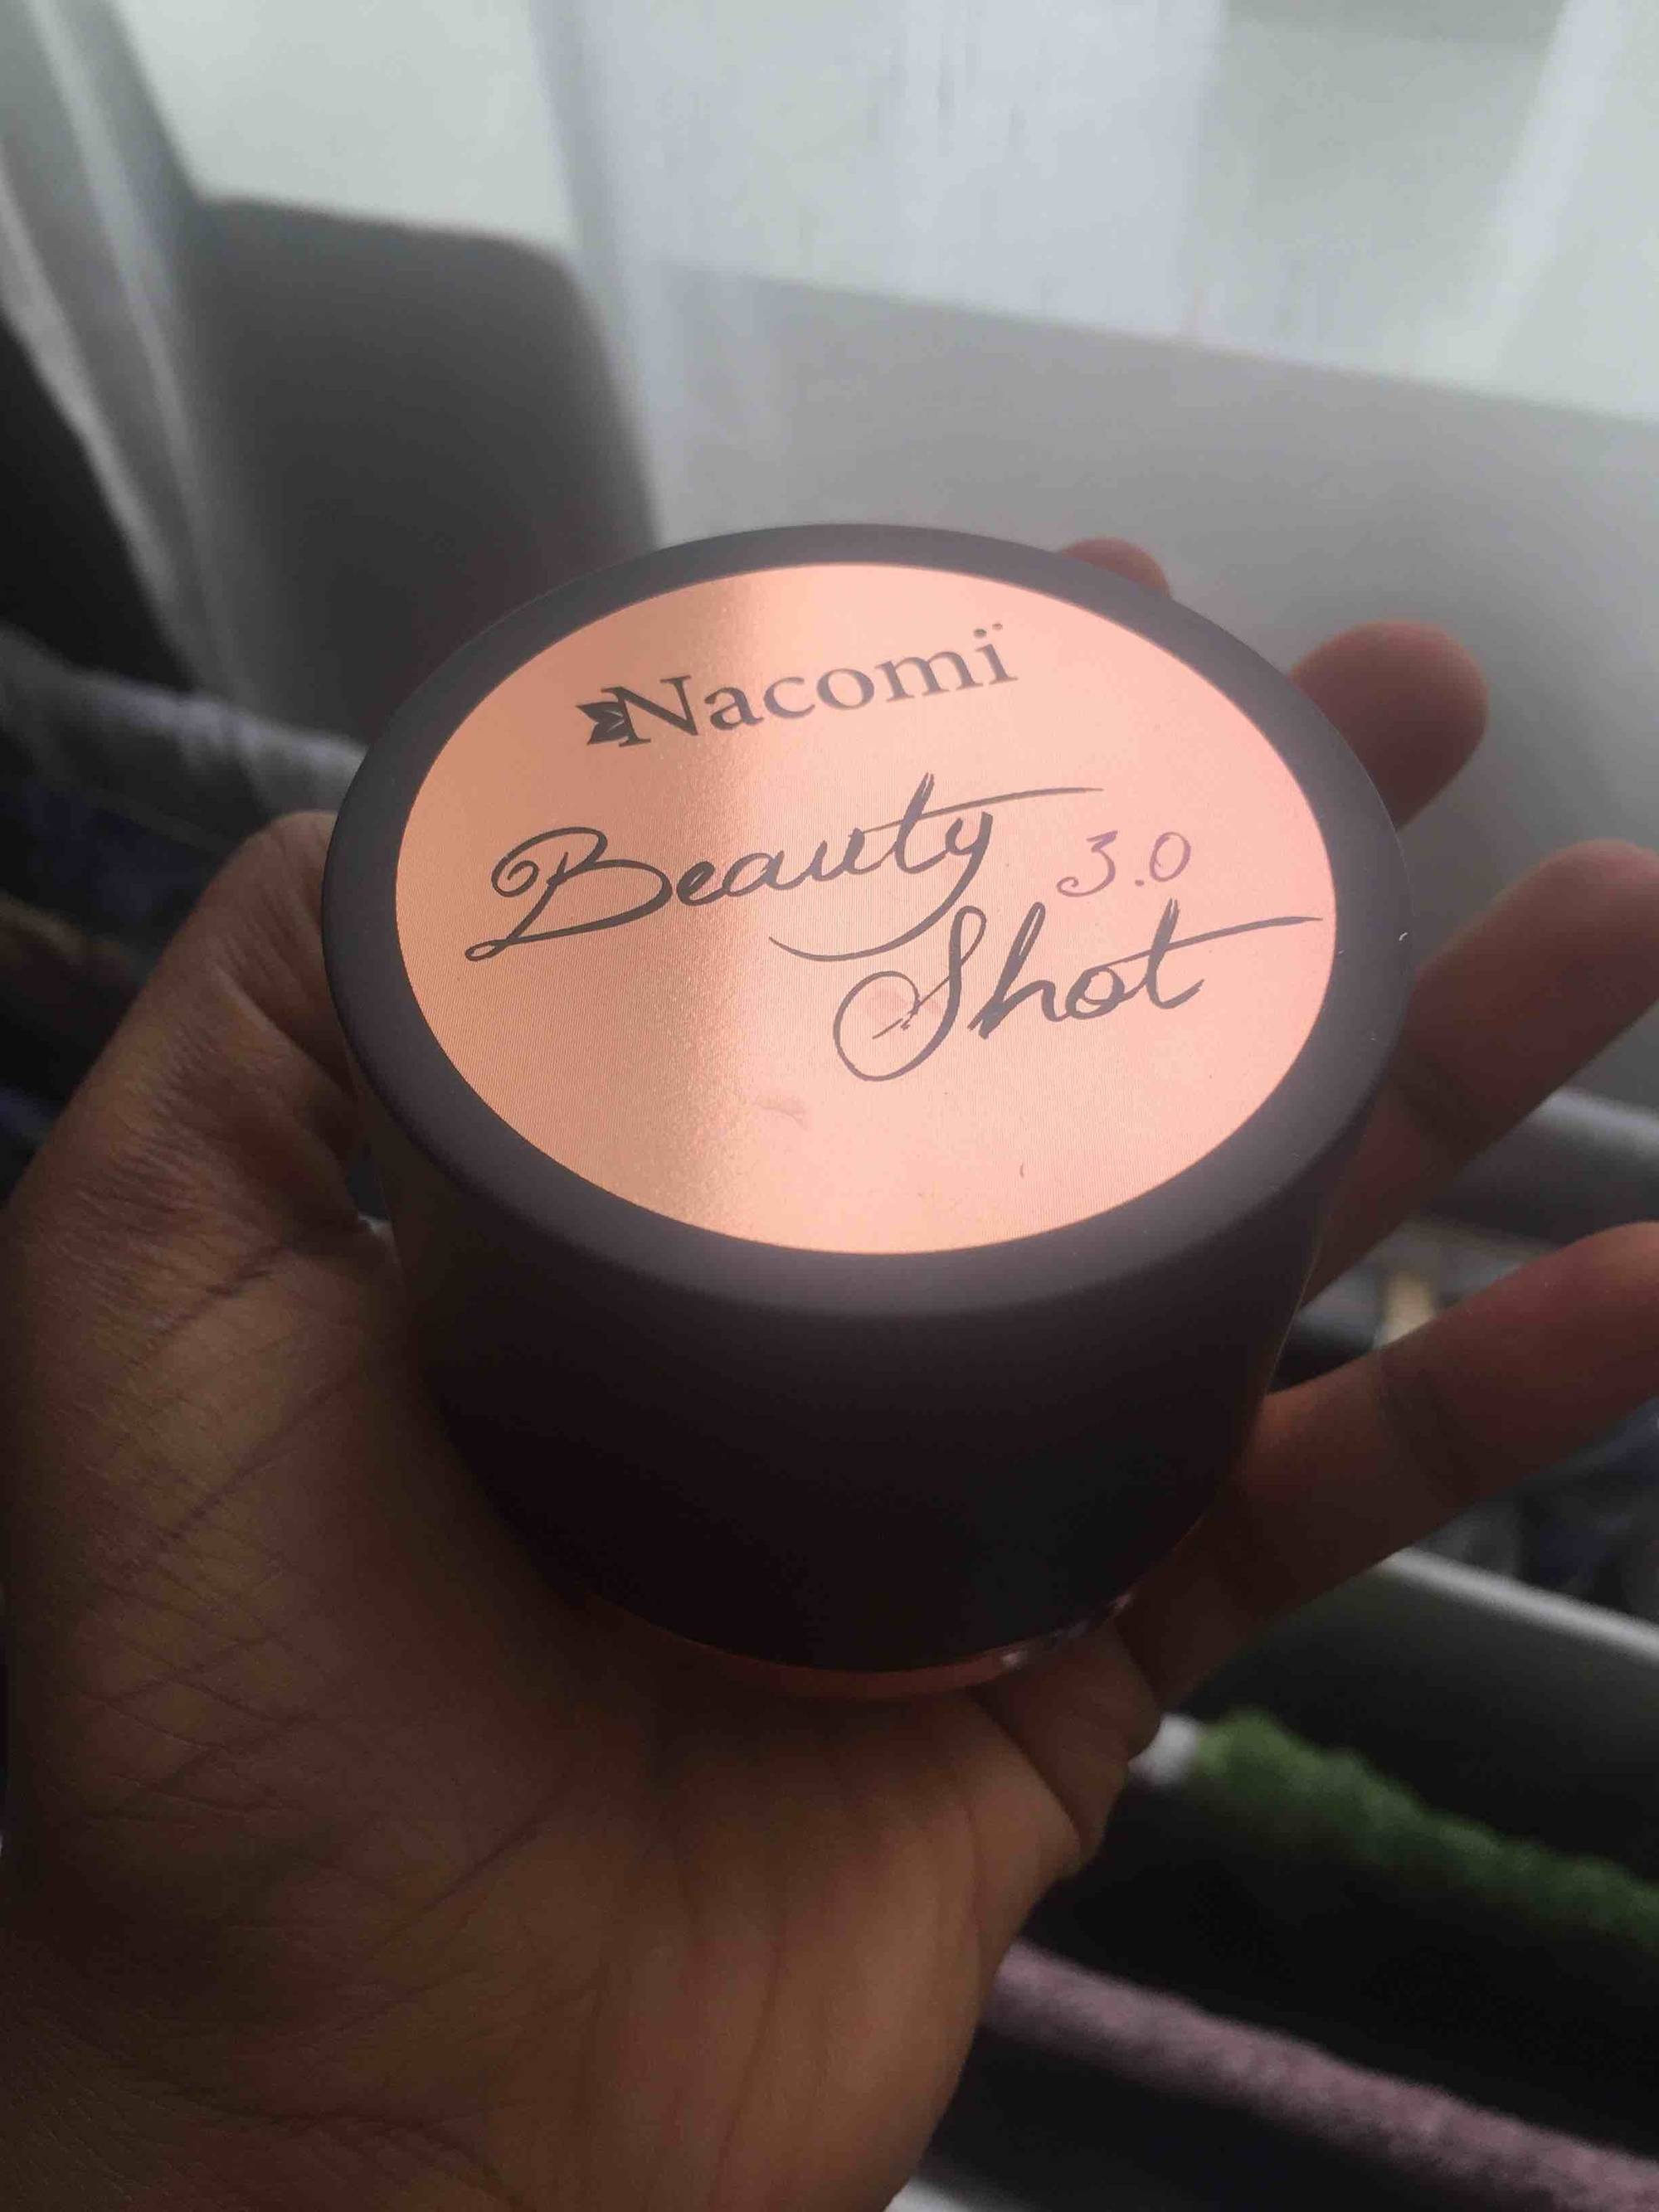 NACOMI - Beauty shot 3.0